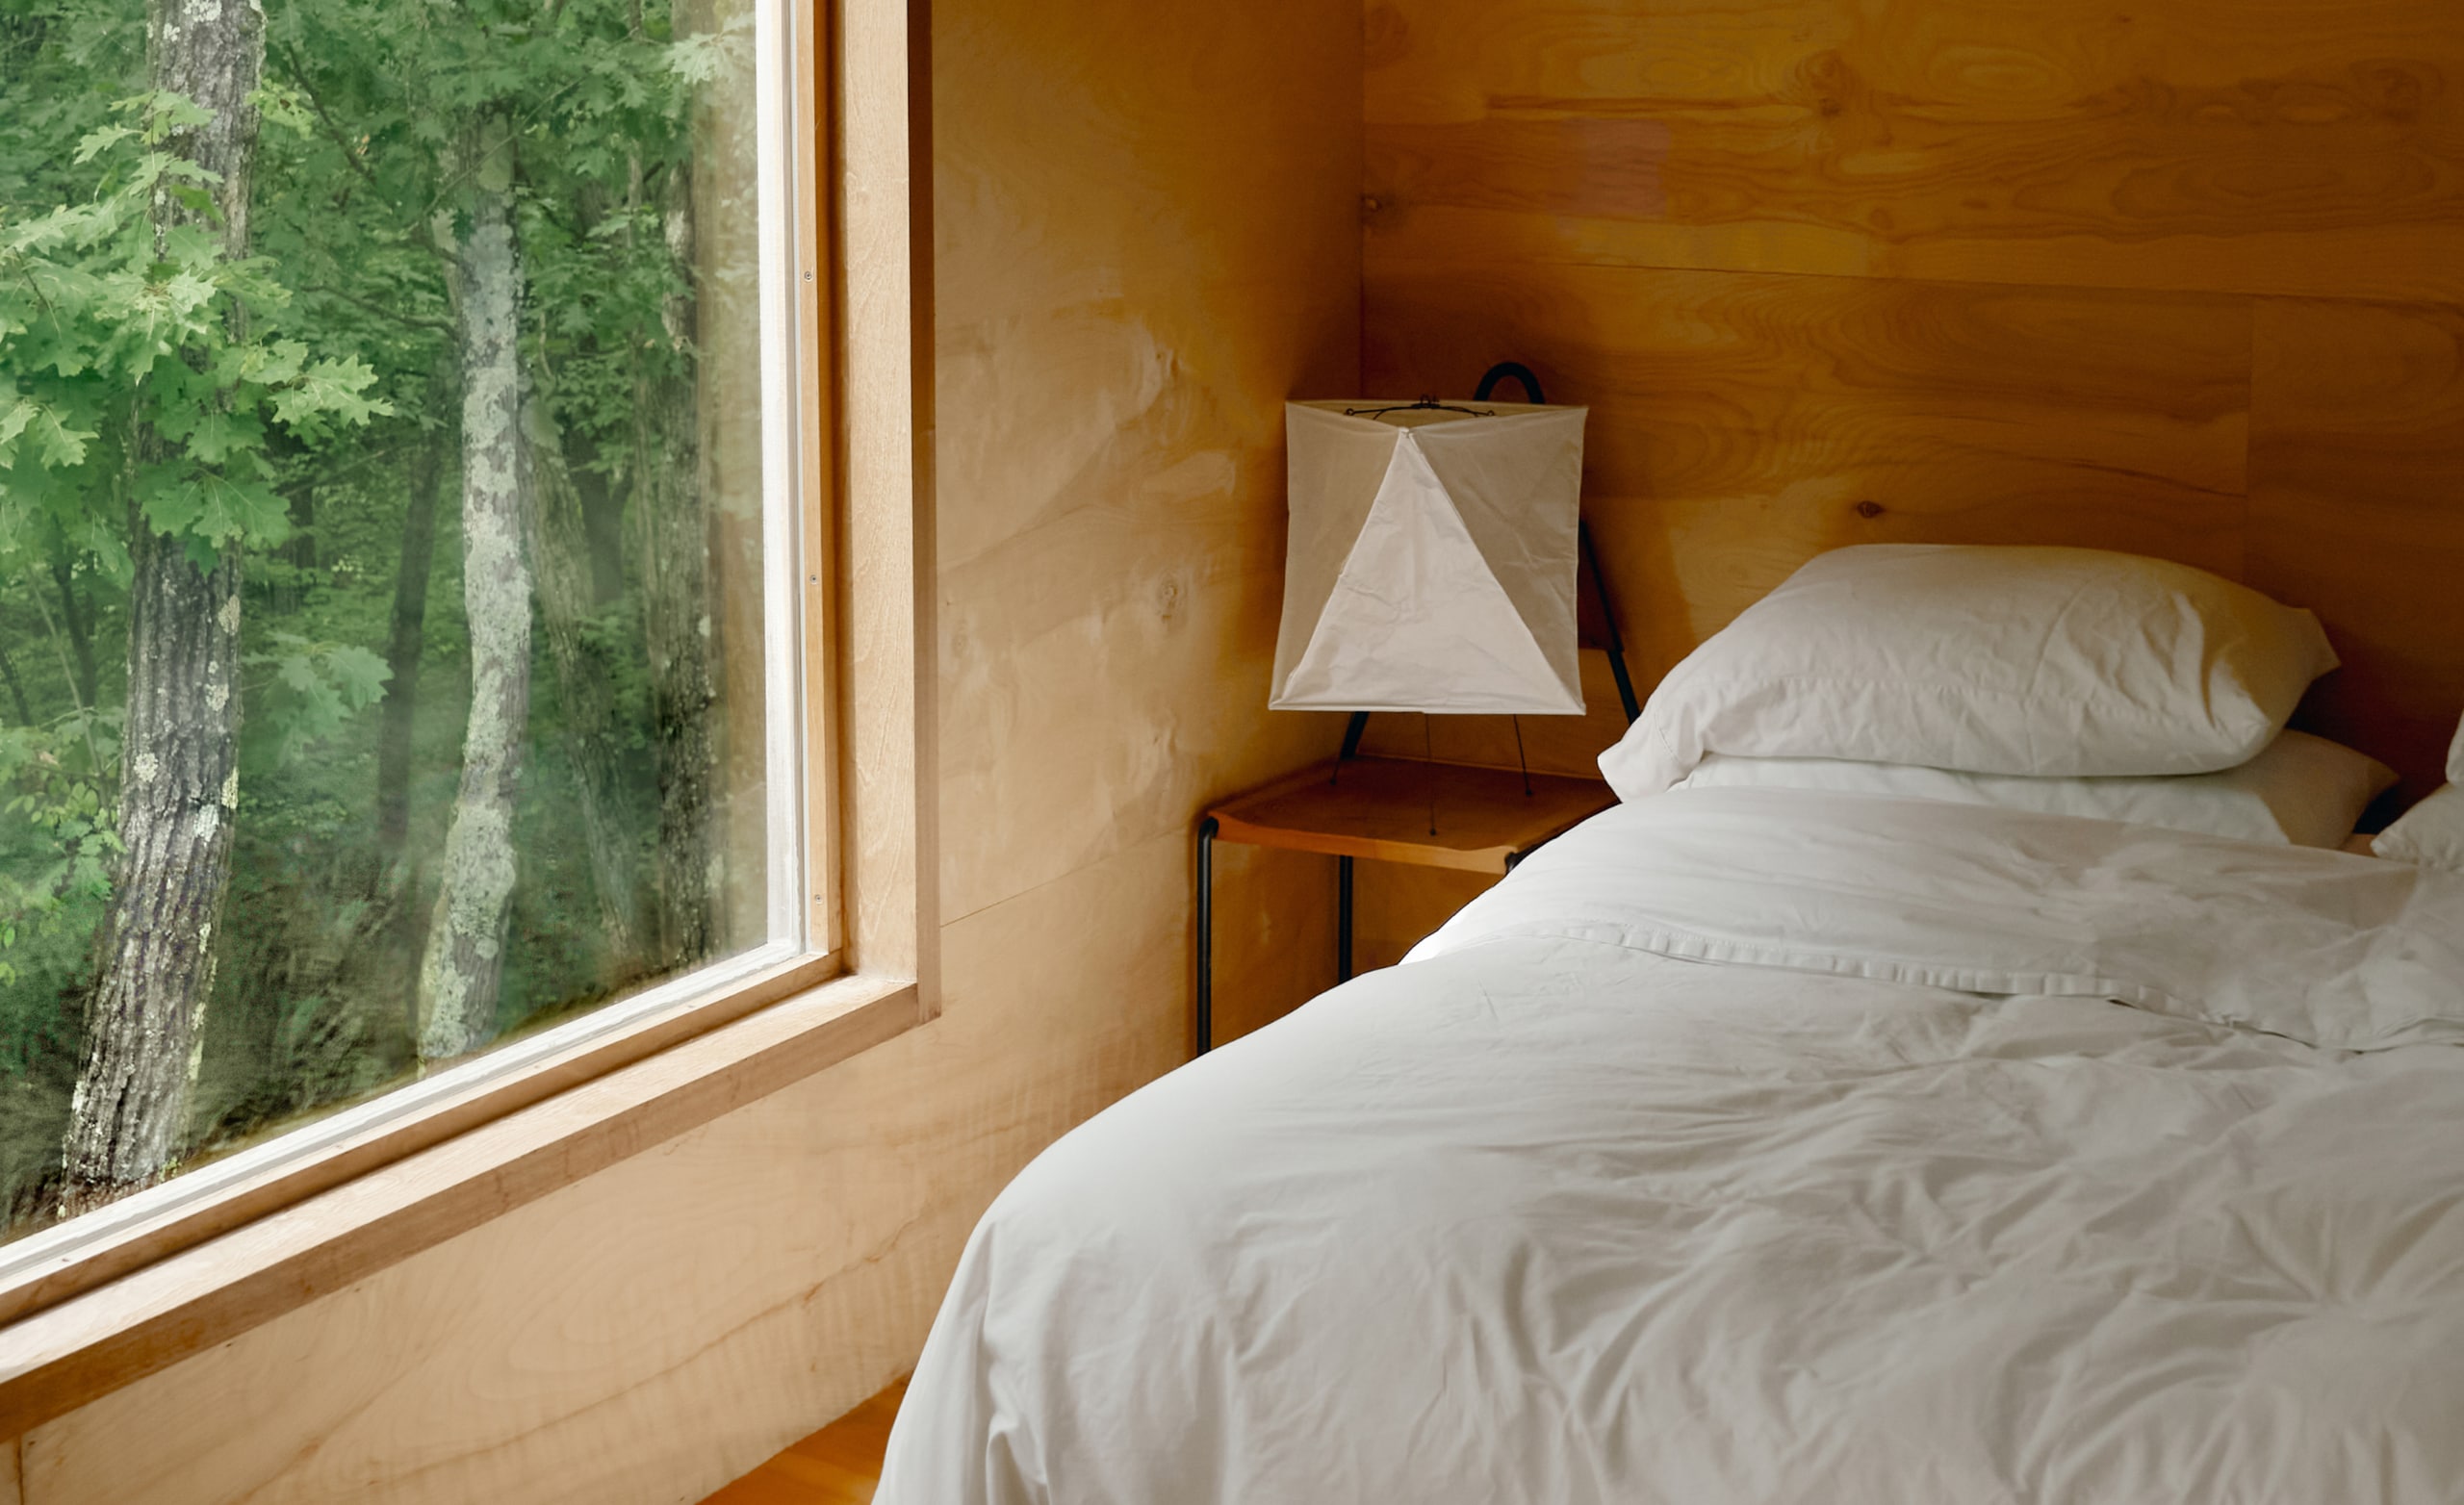 하얀 시트로 덮인 침대가 깨끗하게 정돈되어 있고, 커다란 창문 밖으로 나무가 보이는 침실의 모습입니다.